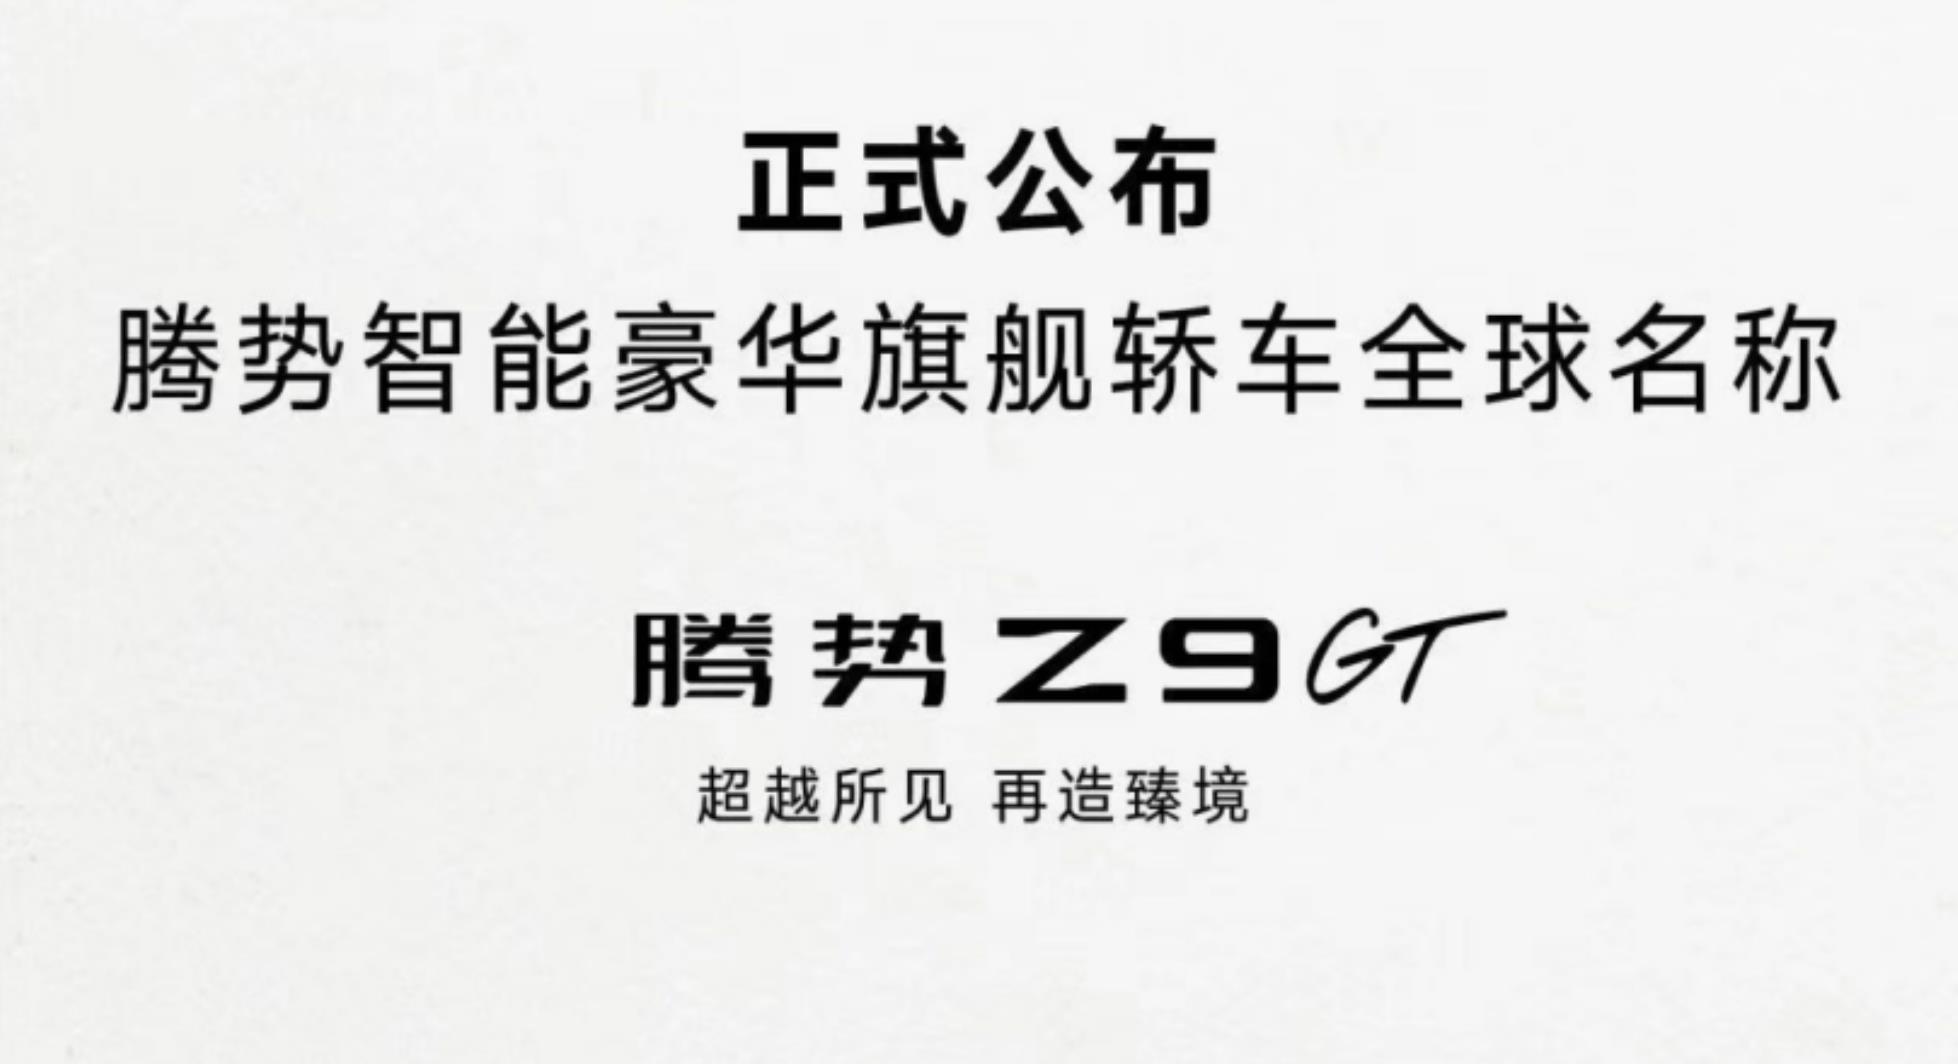 腾势全新轿车定名Z9GT，将于北京车展首发亮相